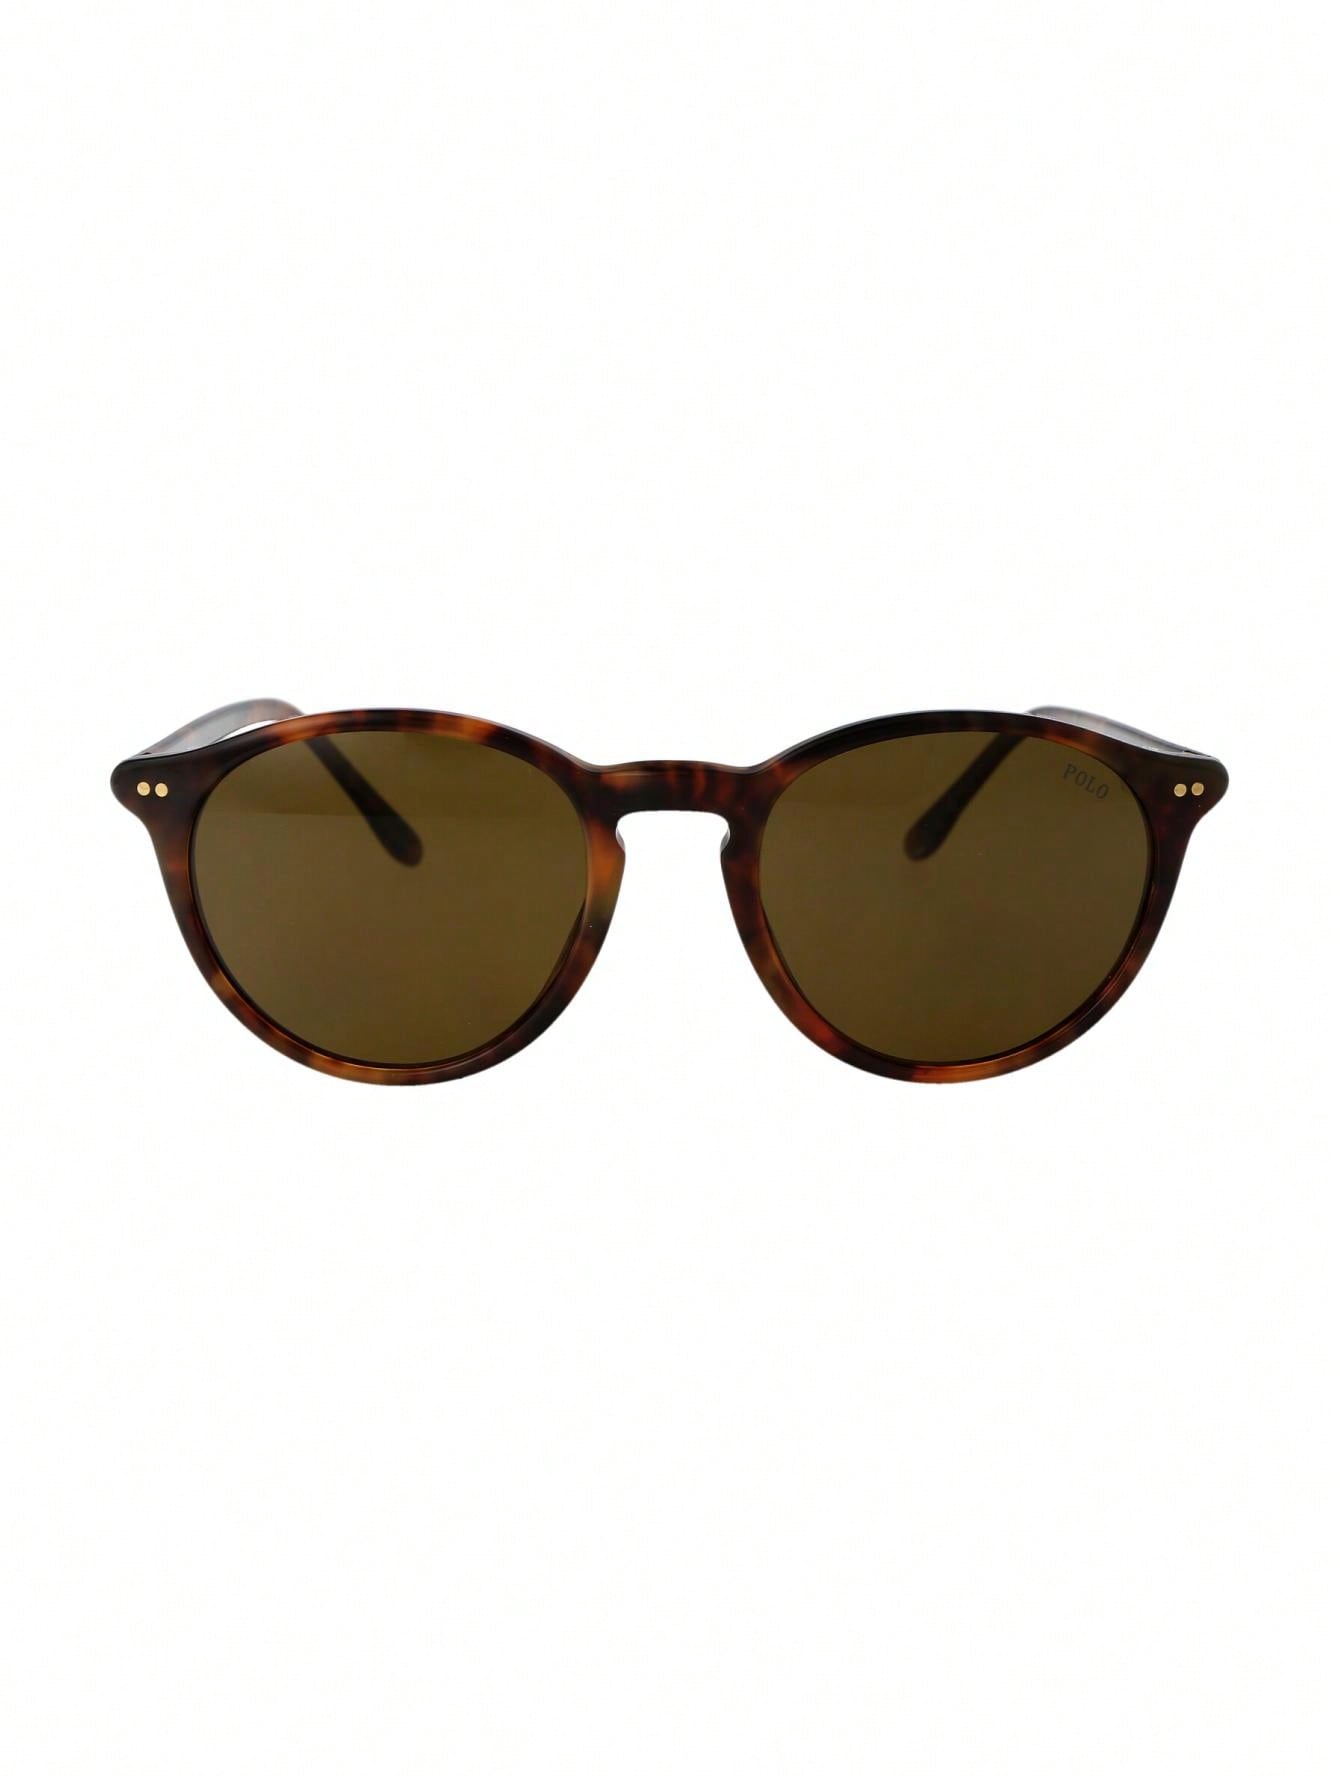 Мужские солнцезащитные очки Polo Ralph Lauren DECOR 0PH4193501773, многоцветный мужские солнцезащитные очки ph4172 50 polo ralph lauren